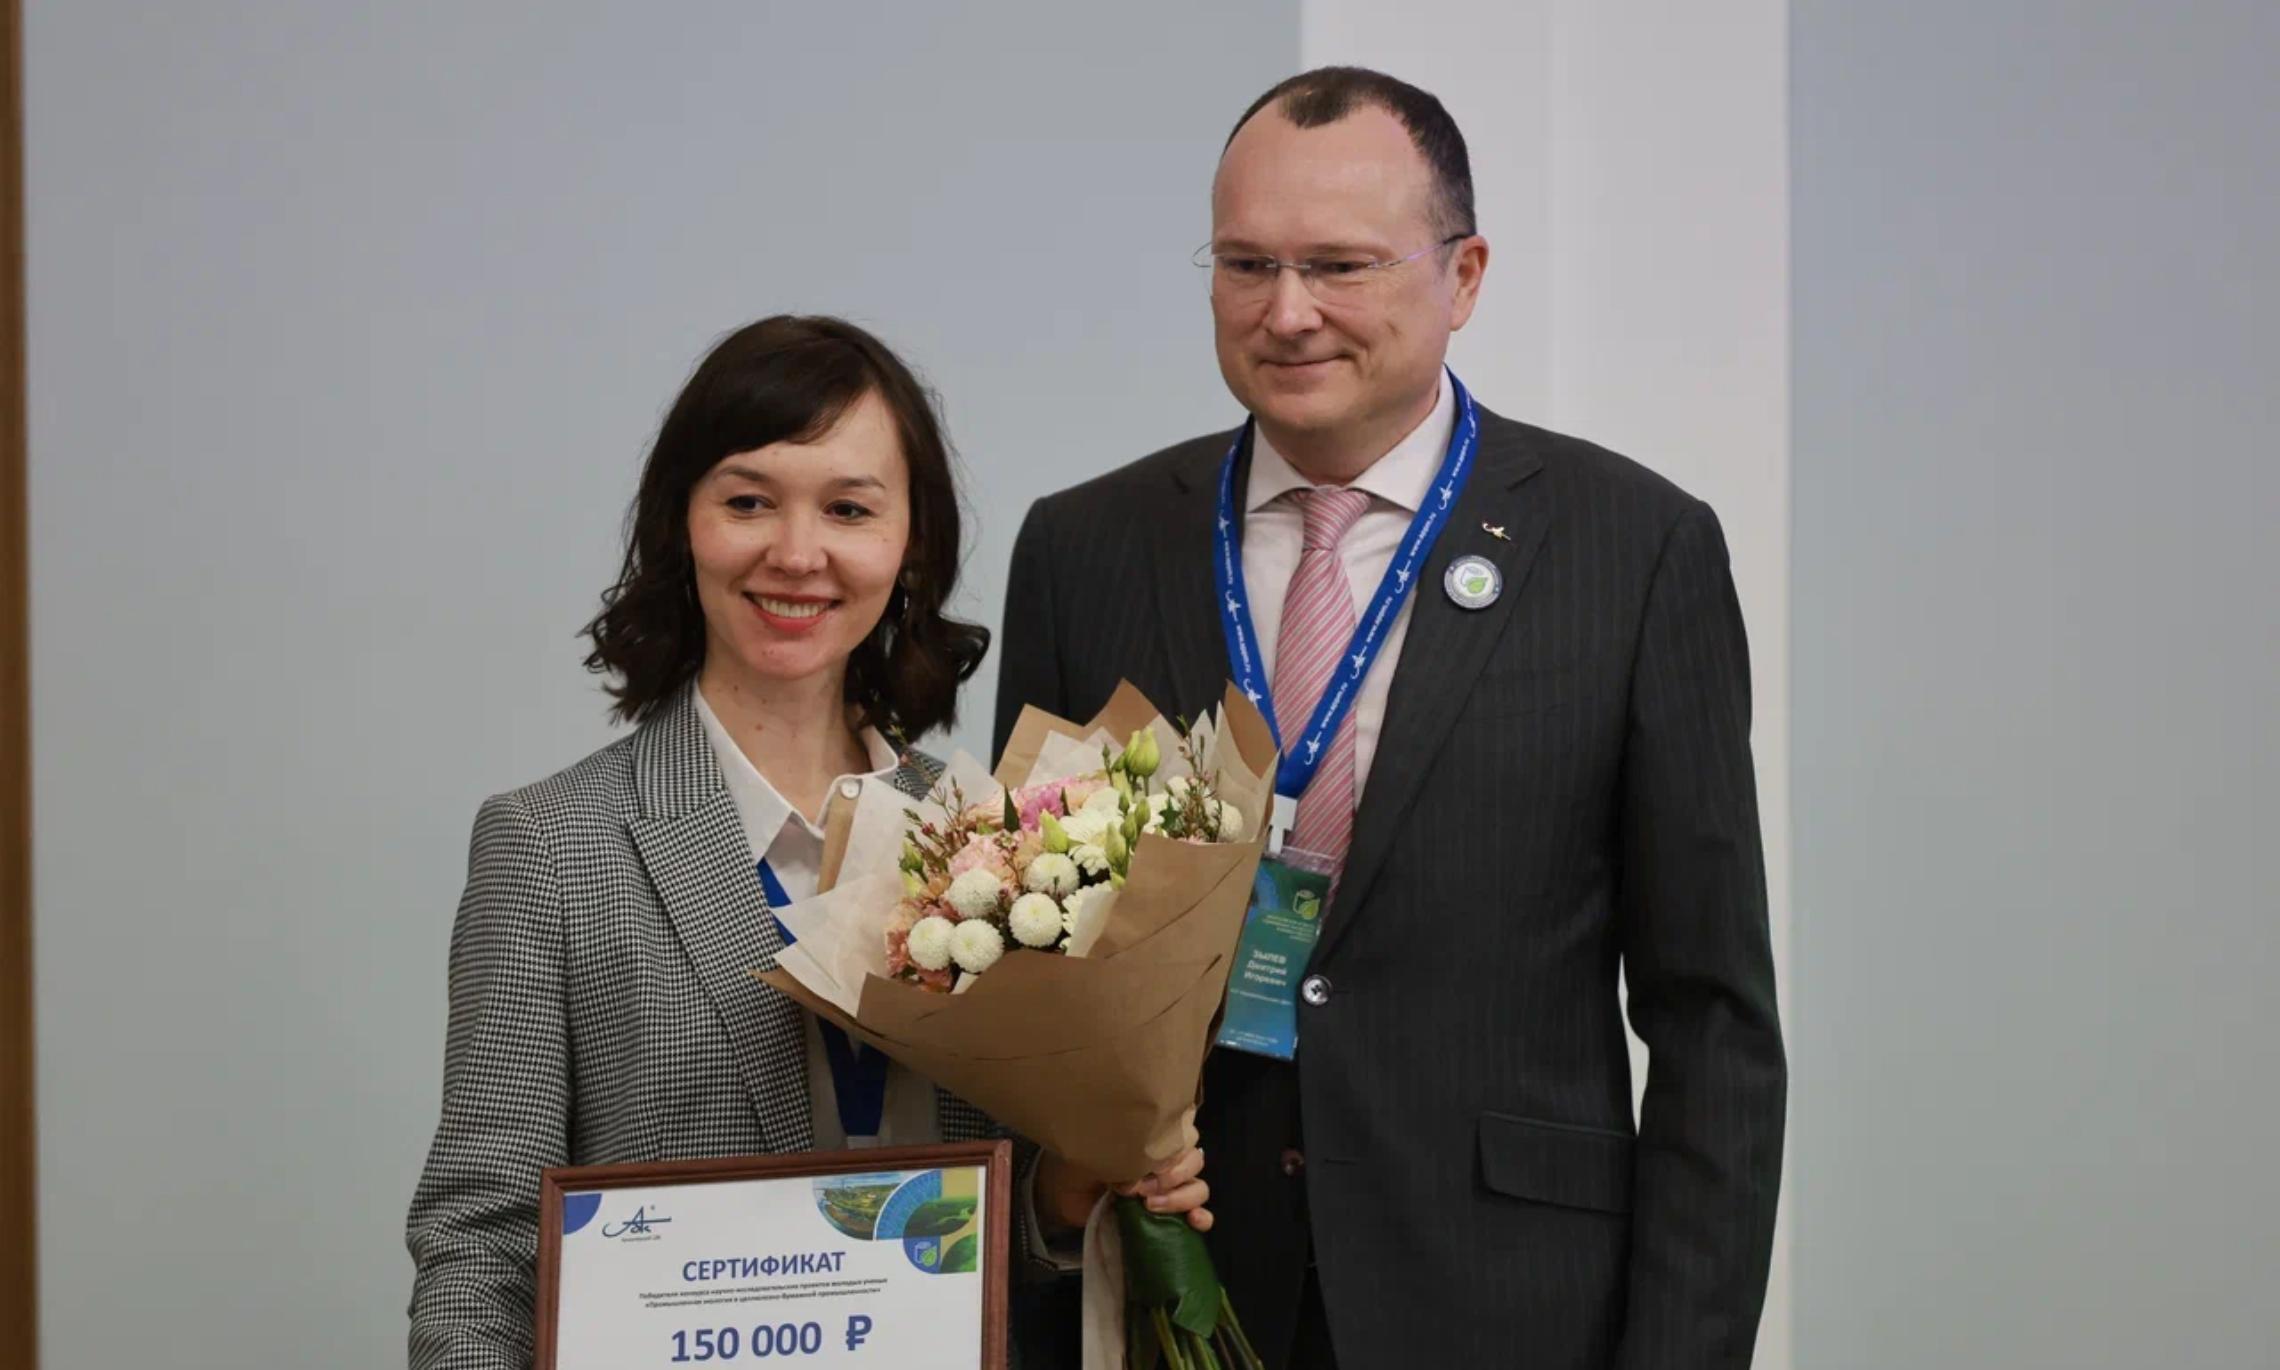 Вручение сертификата Анне Красиковой